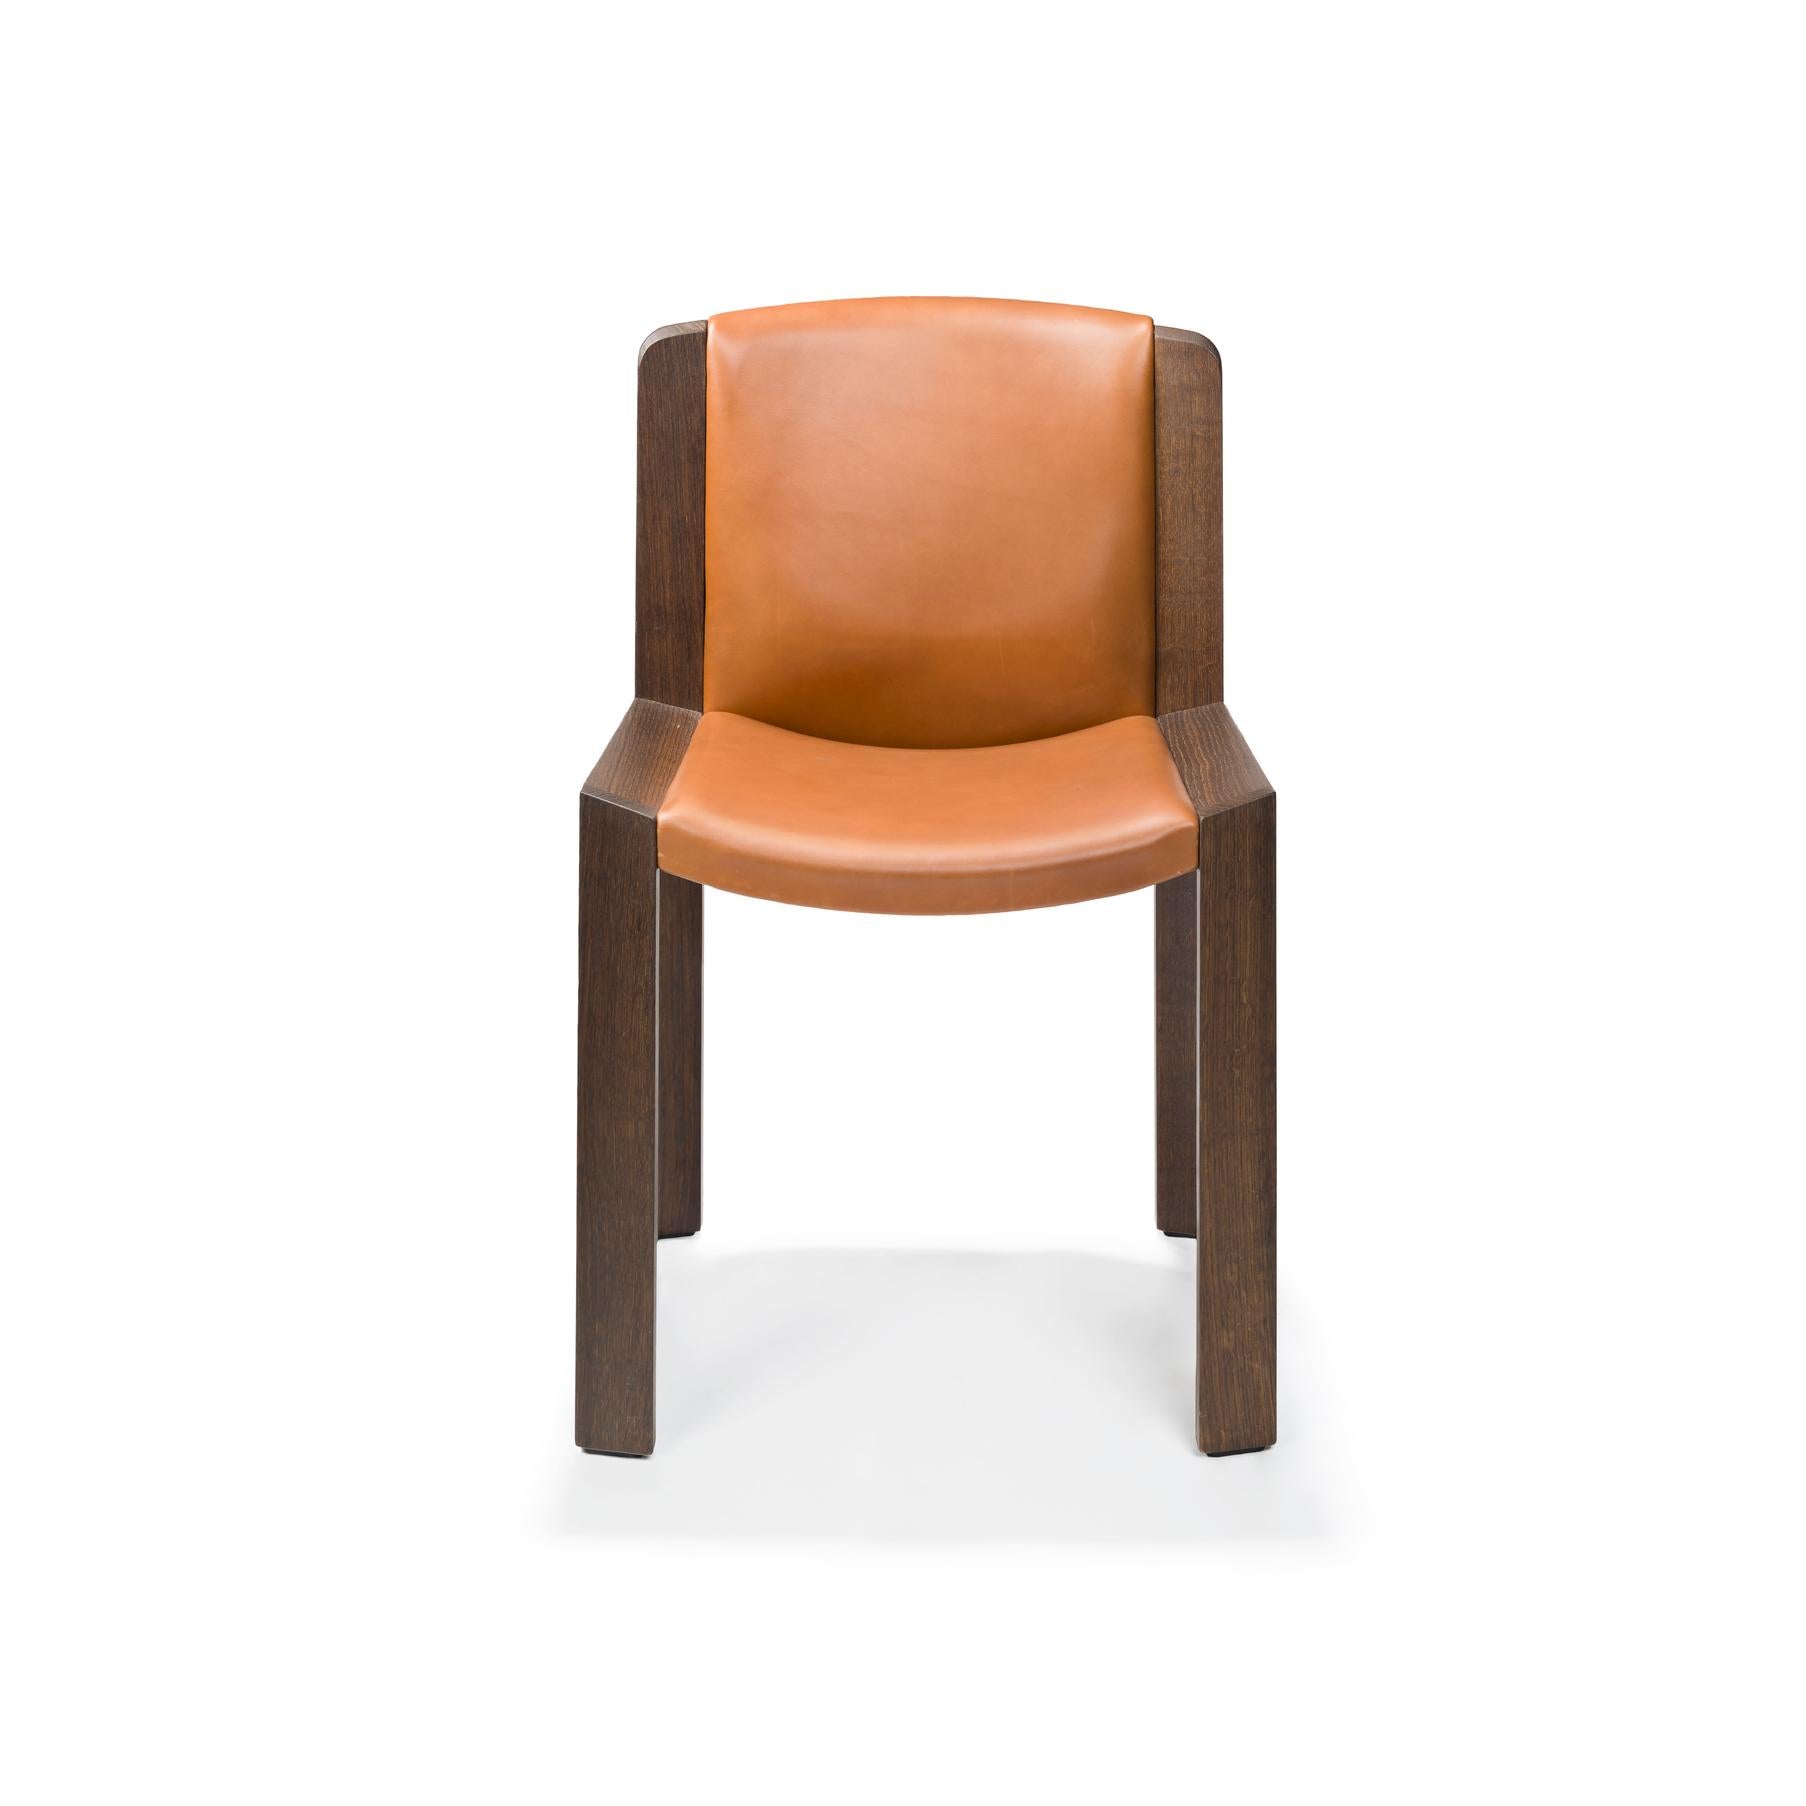 Danois Chaise Joe Colombo ''Chair 300'' en bois et cuir Sørensen par Karakter en vente